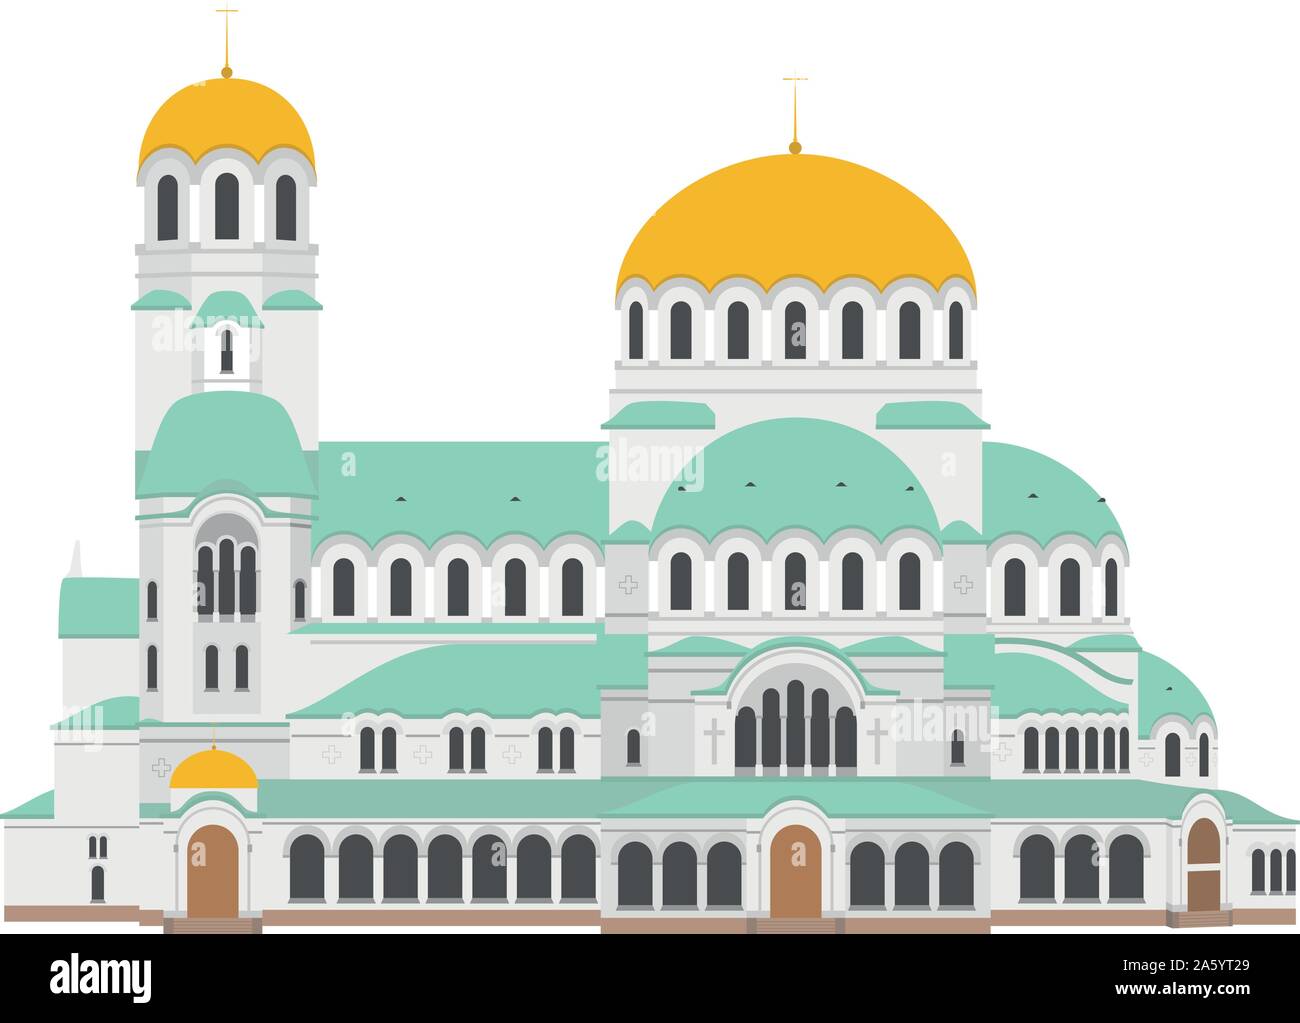 Die Kathedrale von Sofia, Bulgarien. Auf weissem Hintergrund Vektor-illustration isoliert. Stock Vektor